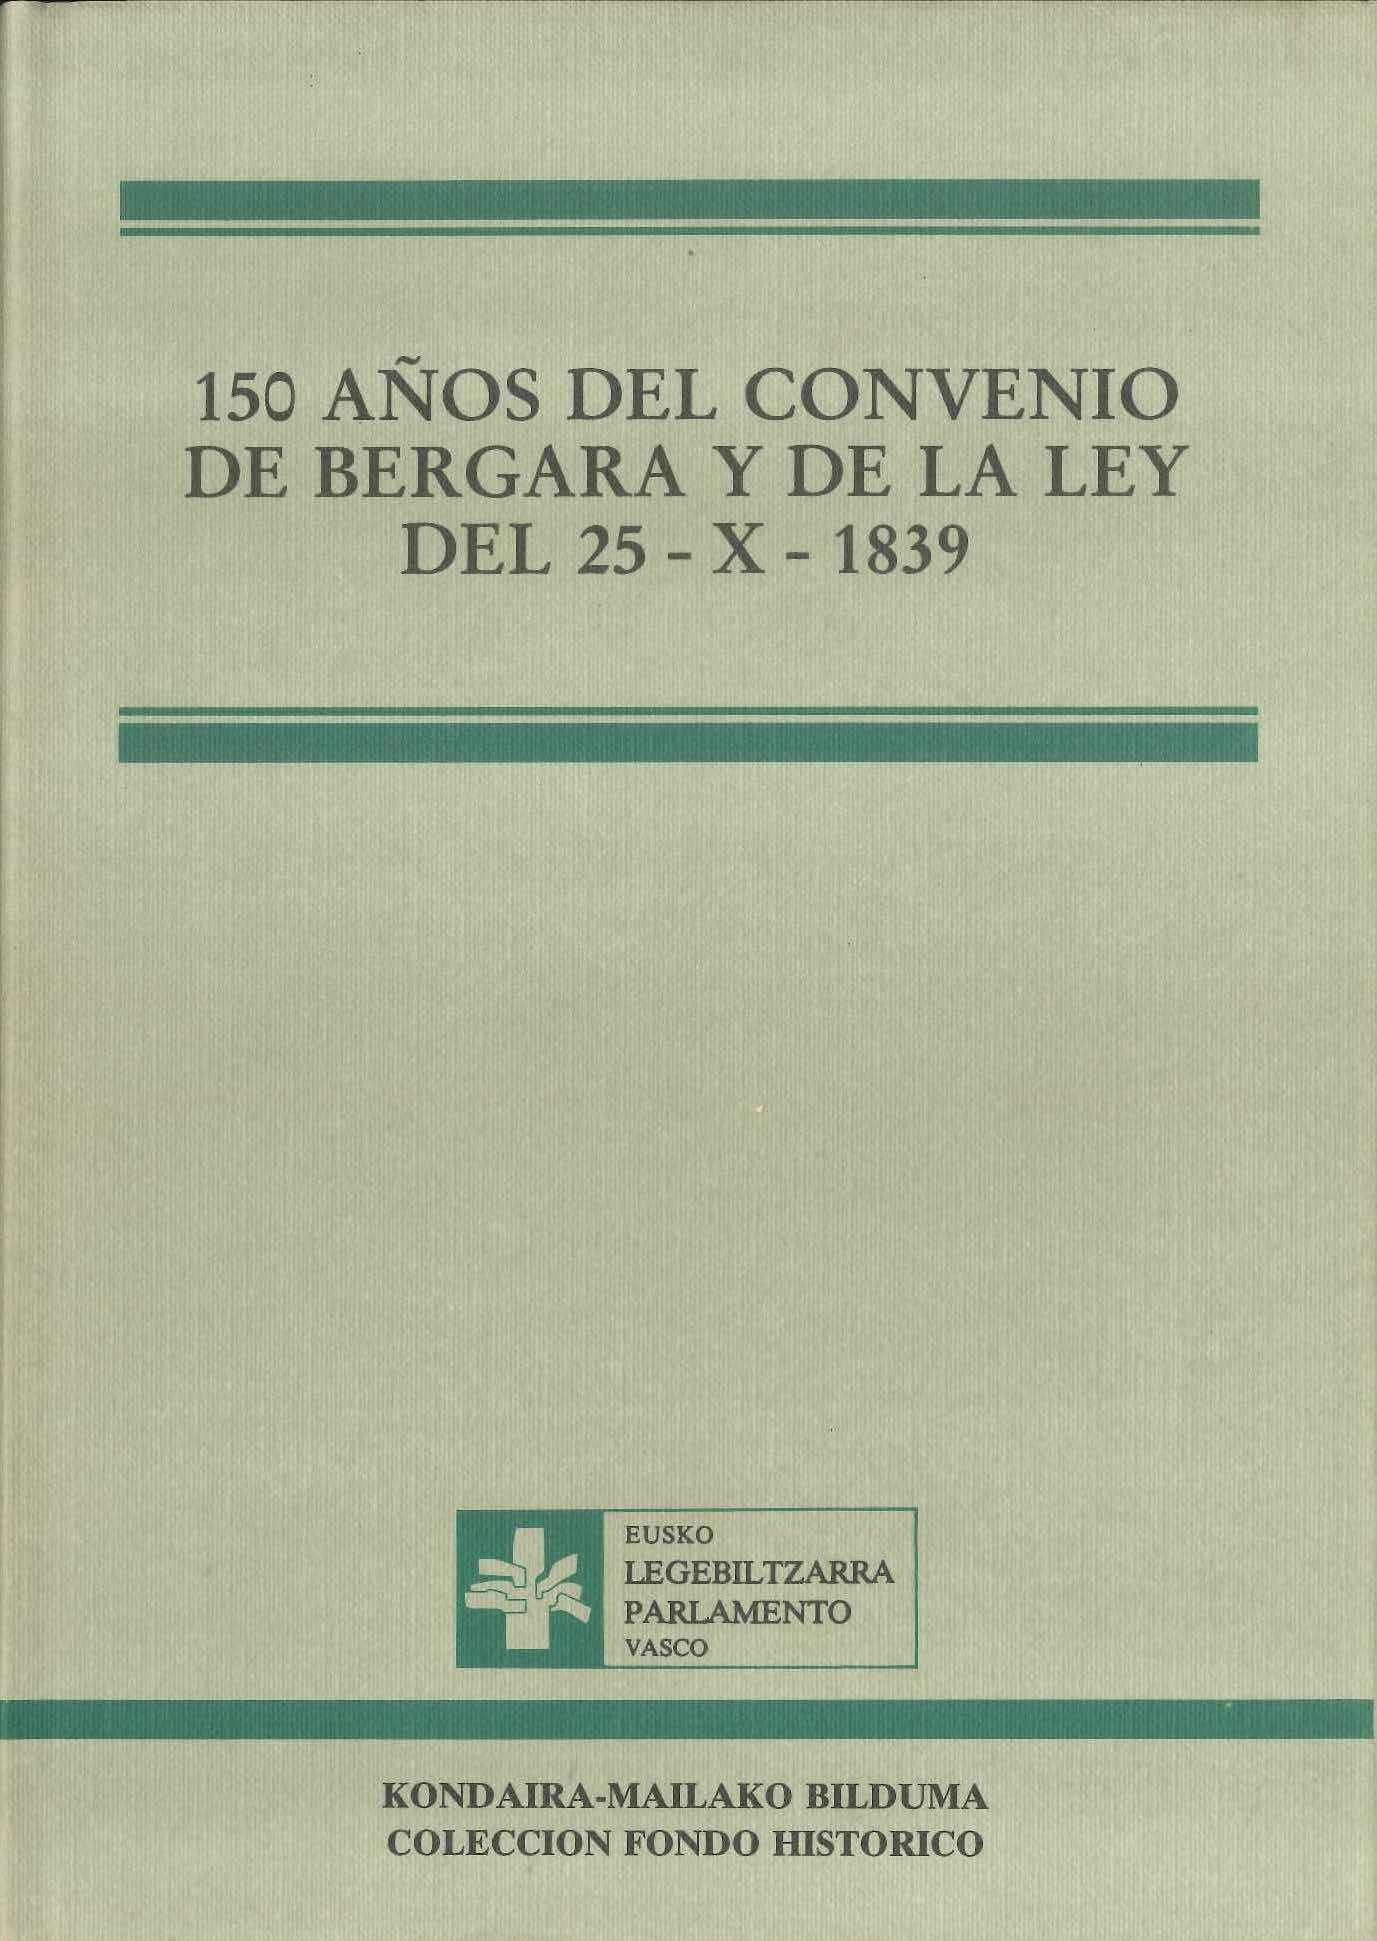 Imagen de portada del libro 150 años del Convenio de Bergara y de la Ley del 25-X-1839